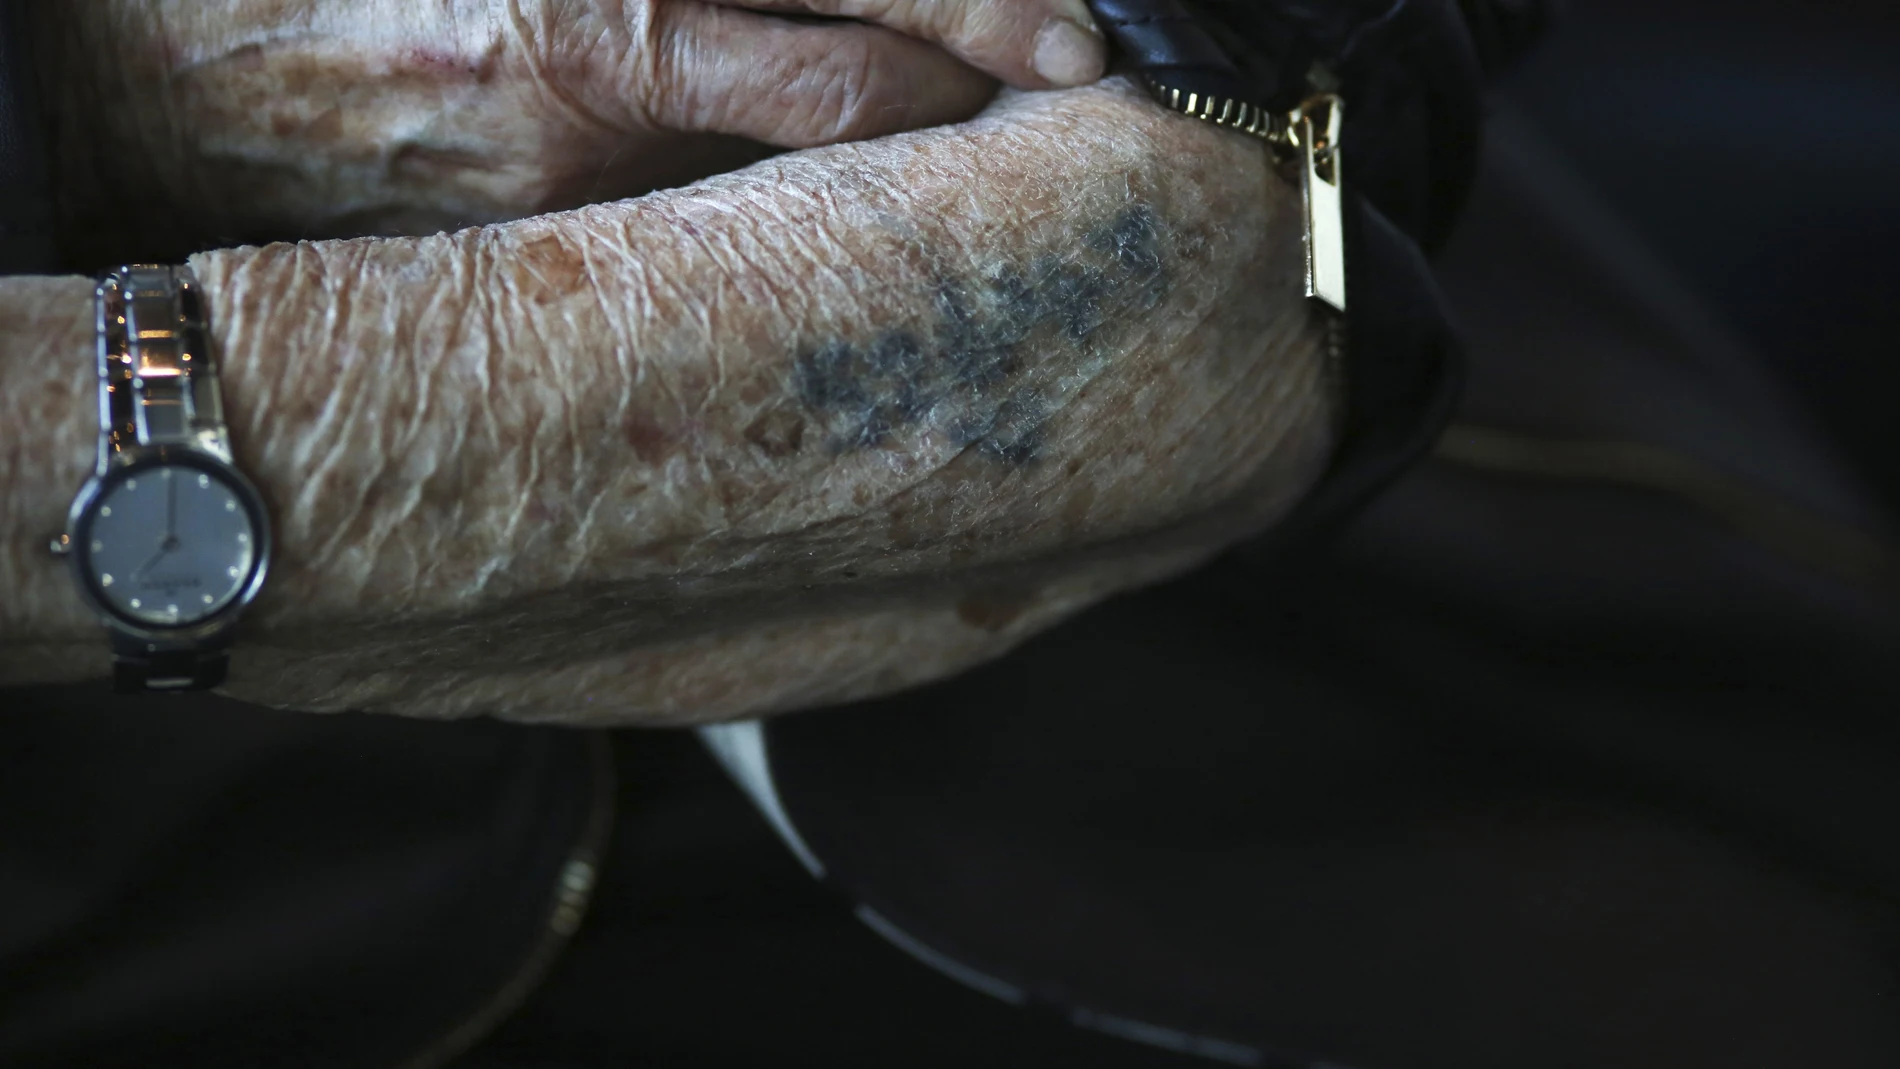 El brazo de Bronia Brandman, superviviente del Holocausto, marcado por los tatuajes distintivos de los nazis